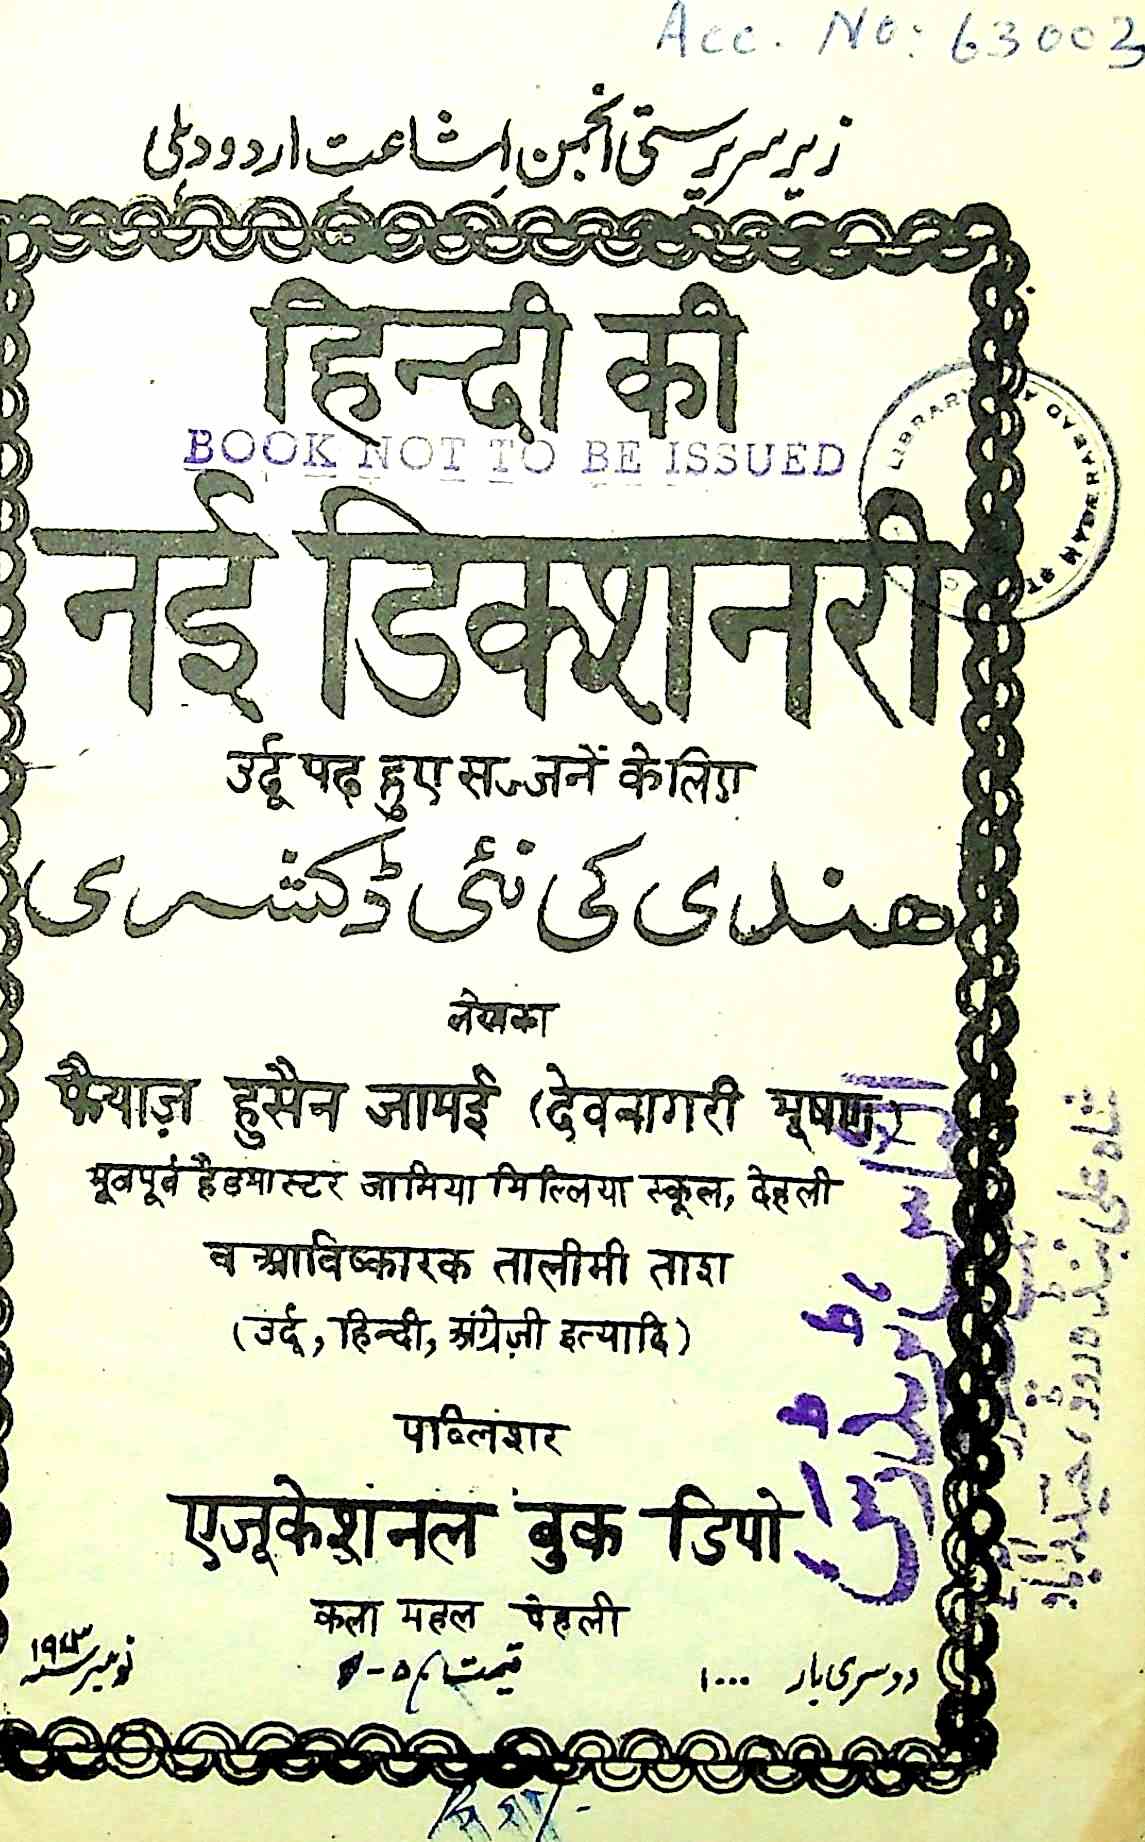 ہندی نئی ڈکشنری